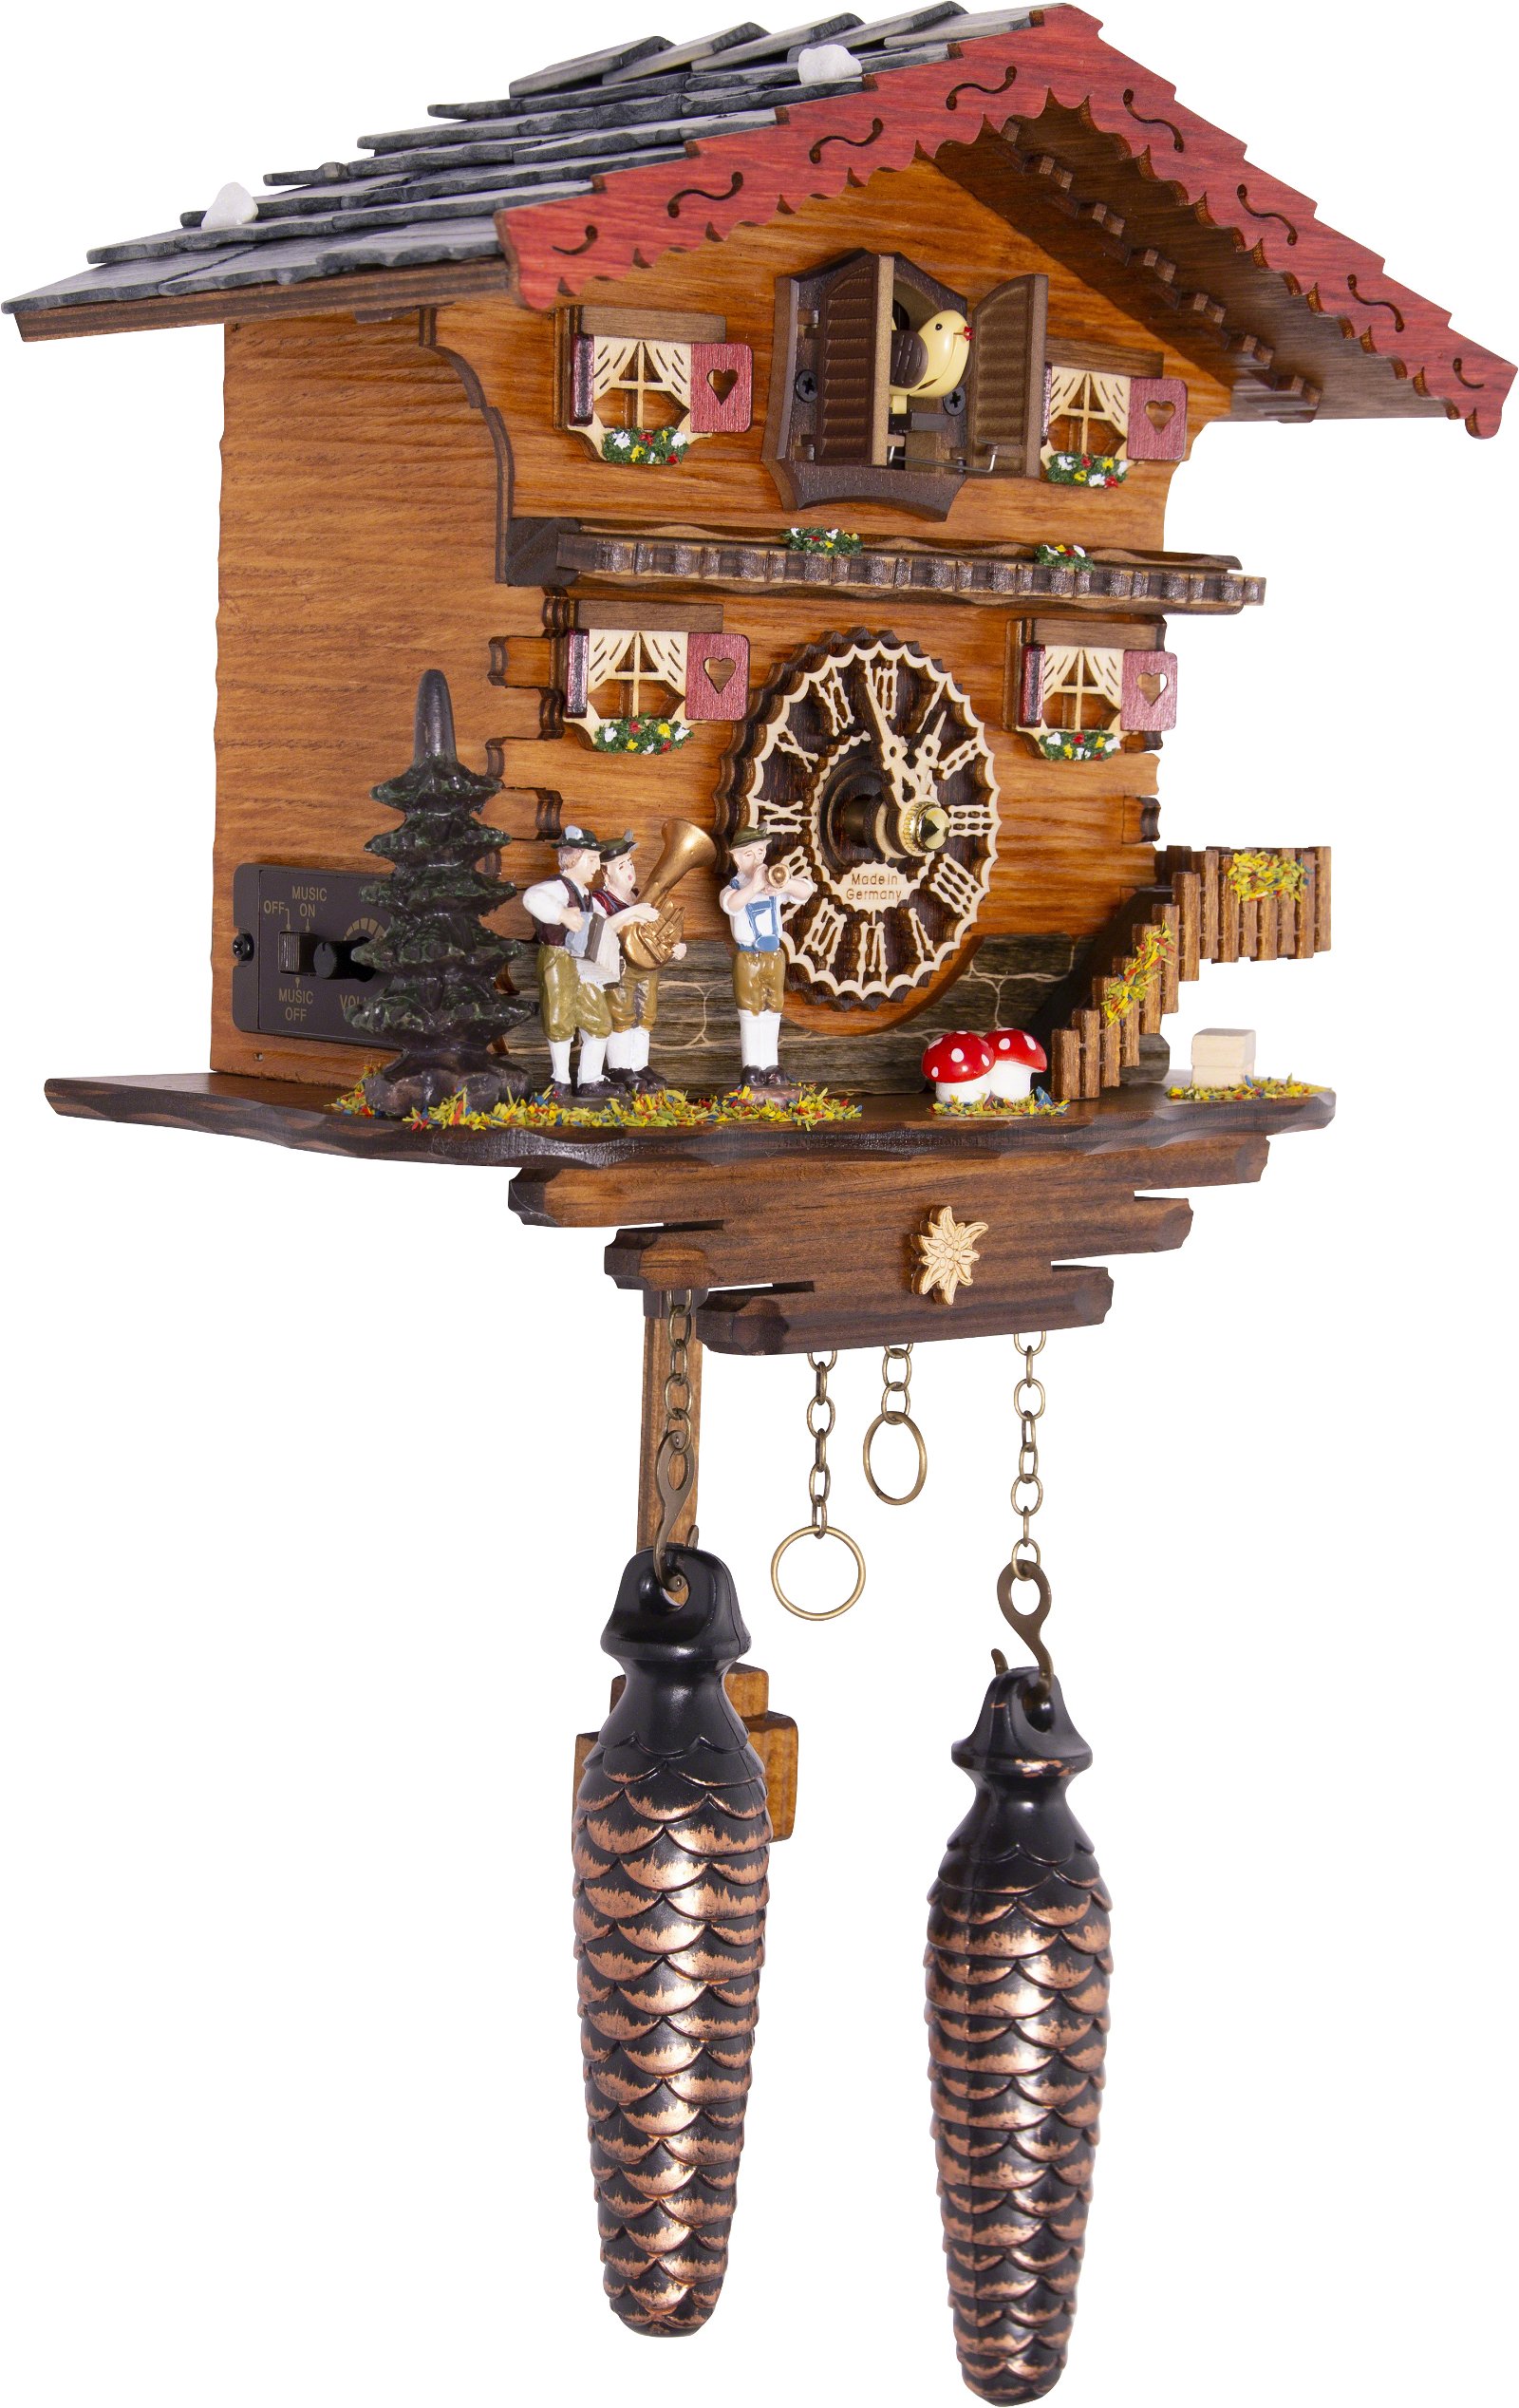 Kuckucksuhr Quarz-Uhrwerk Chalet-Stil 19cm von Trenkle Uhren